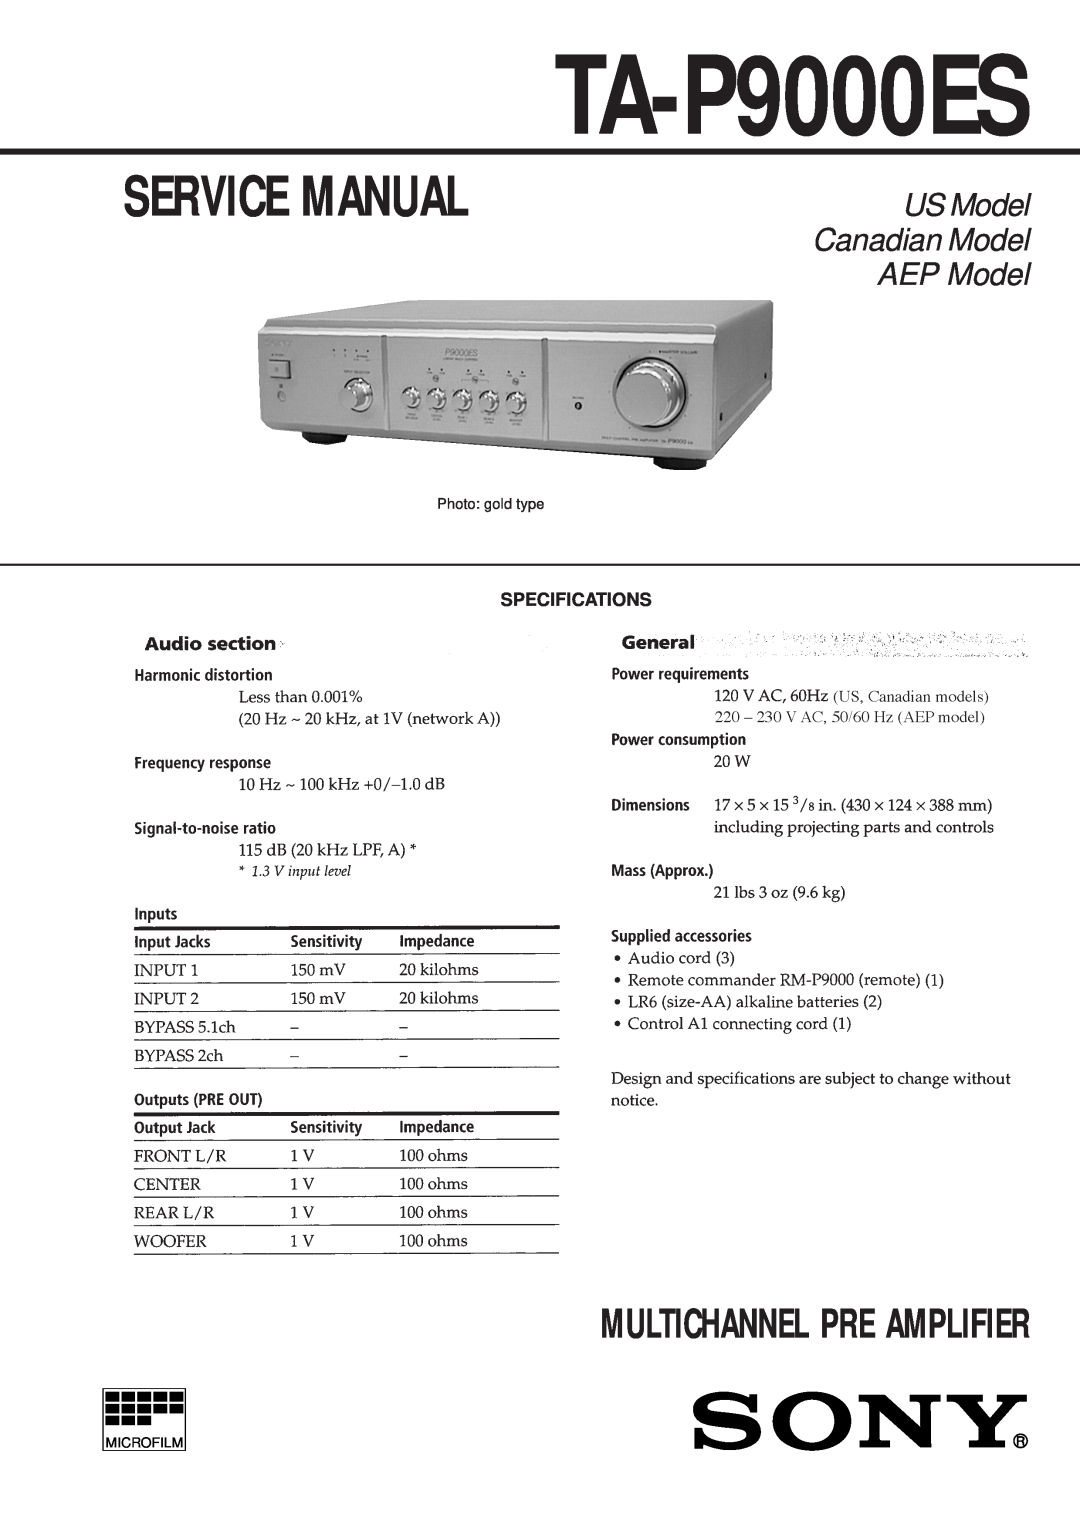 Sony TA-P9000ES service manual Specifications, Multichannel Pre Amplifier, US Model Canadian Model AEP Model 